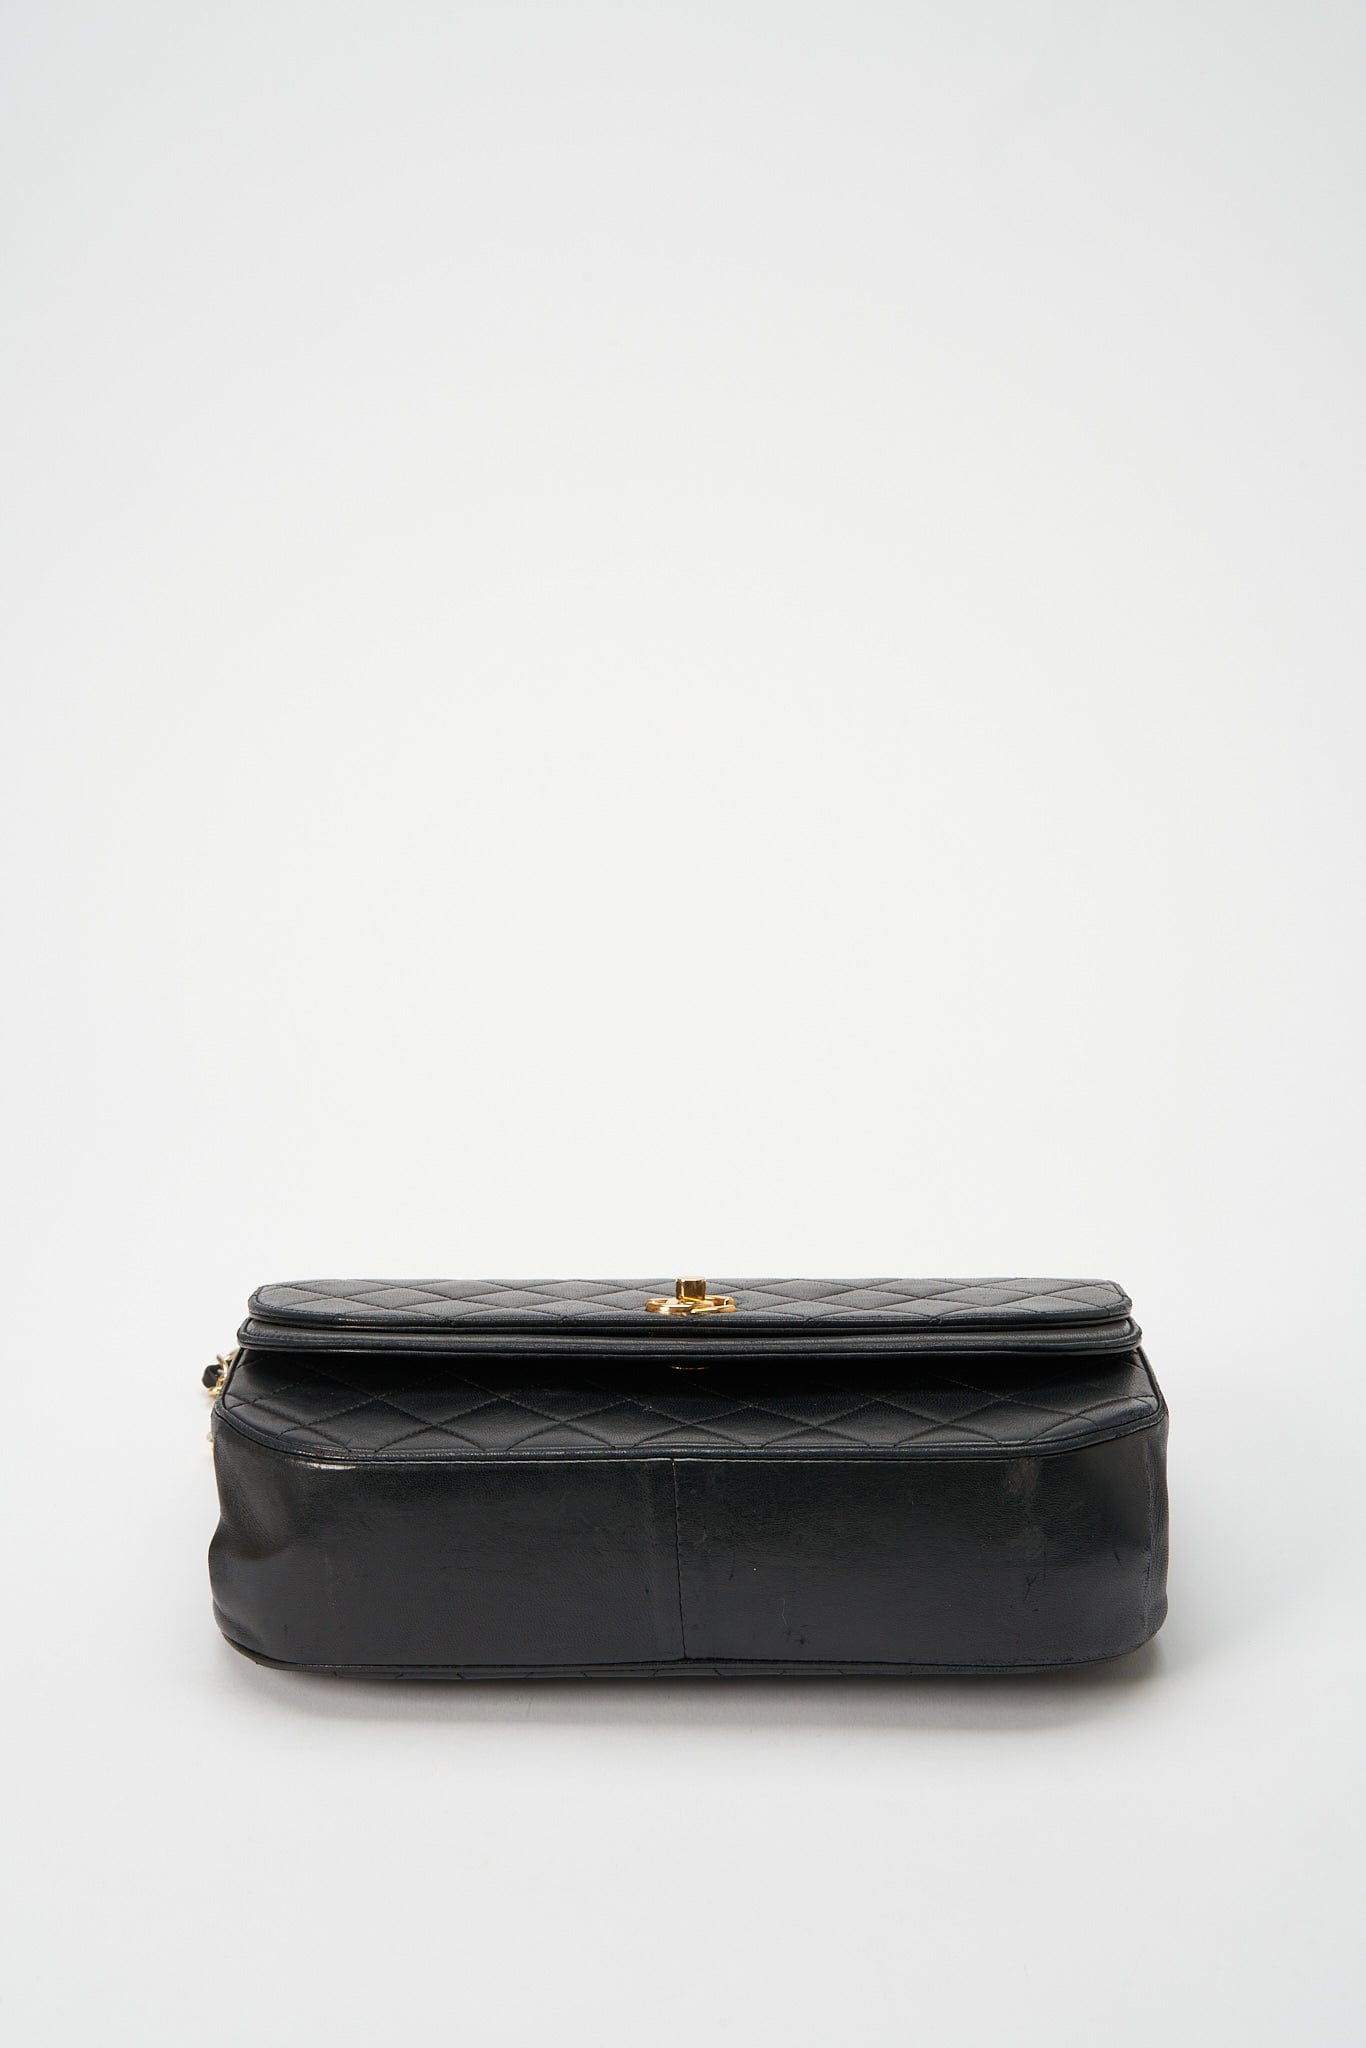 Chanel Black Satin Vintage Quilted Frame Evening Bag - Chanel